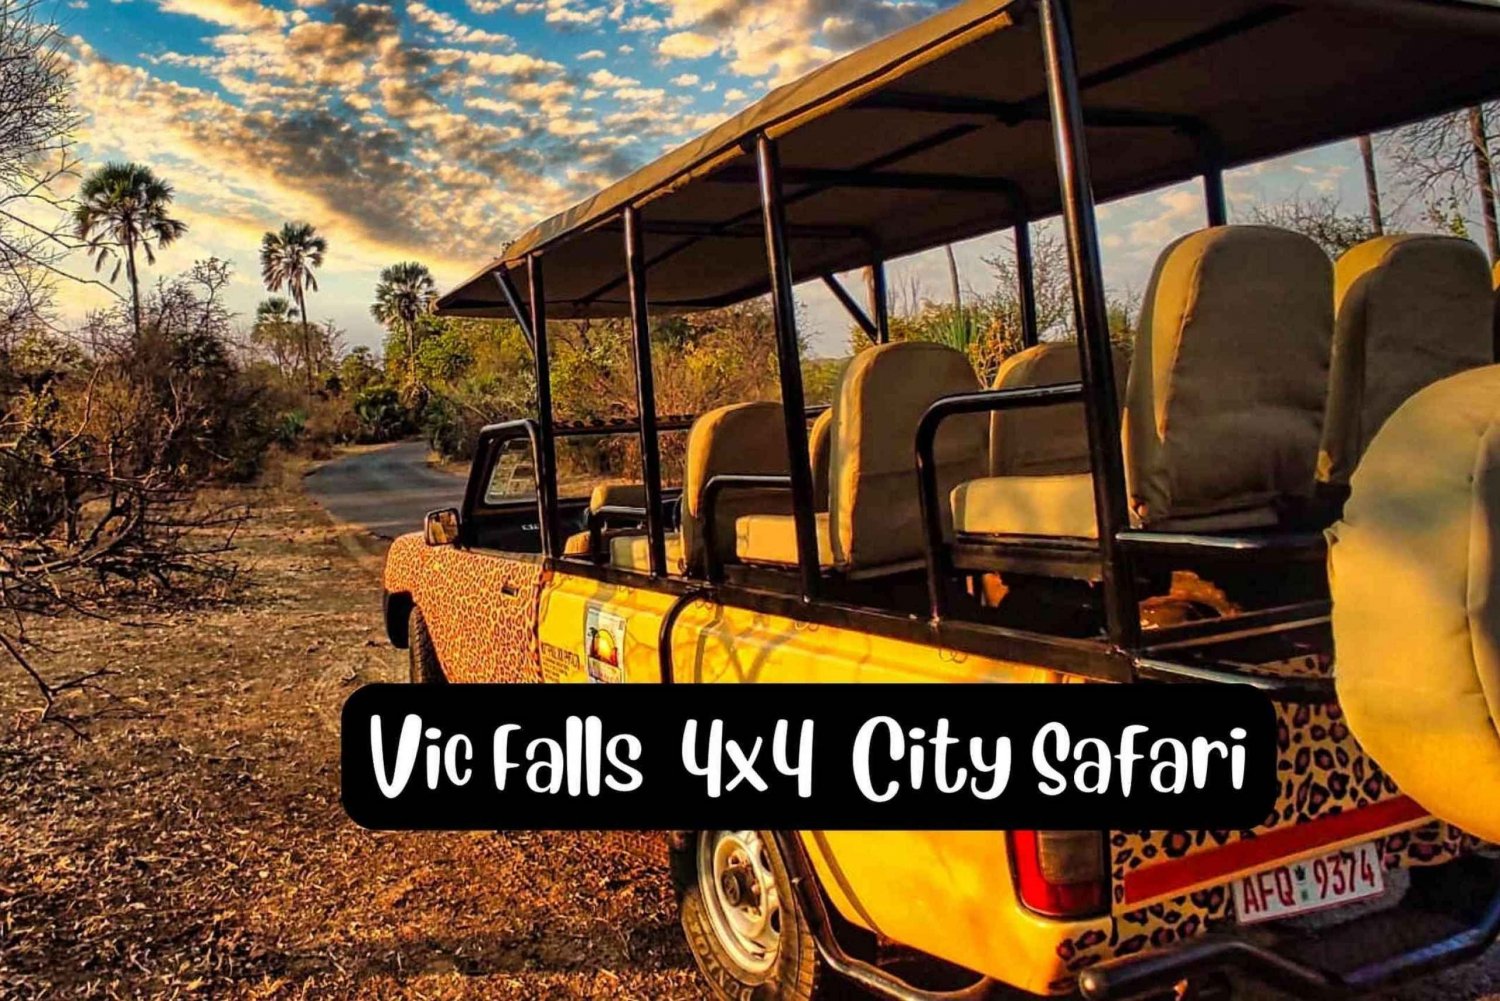 Victoria Falls : Safari 4x4 dans la ville de Victoria Falls